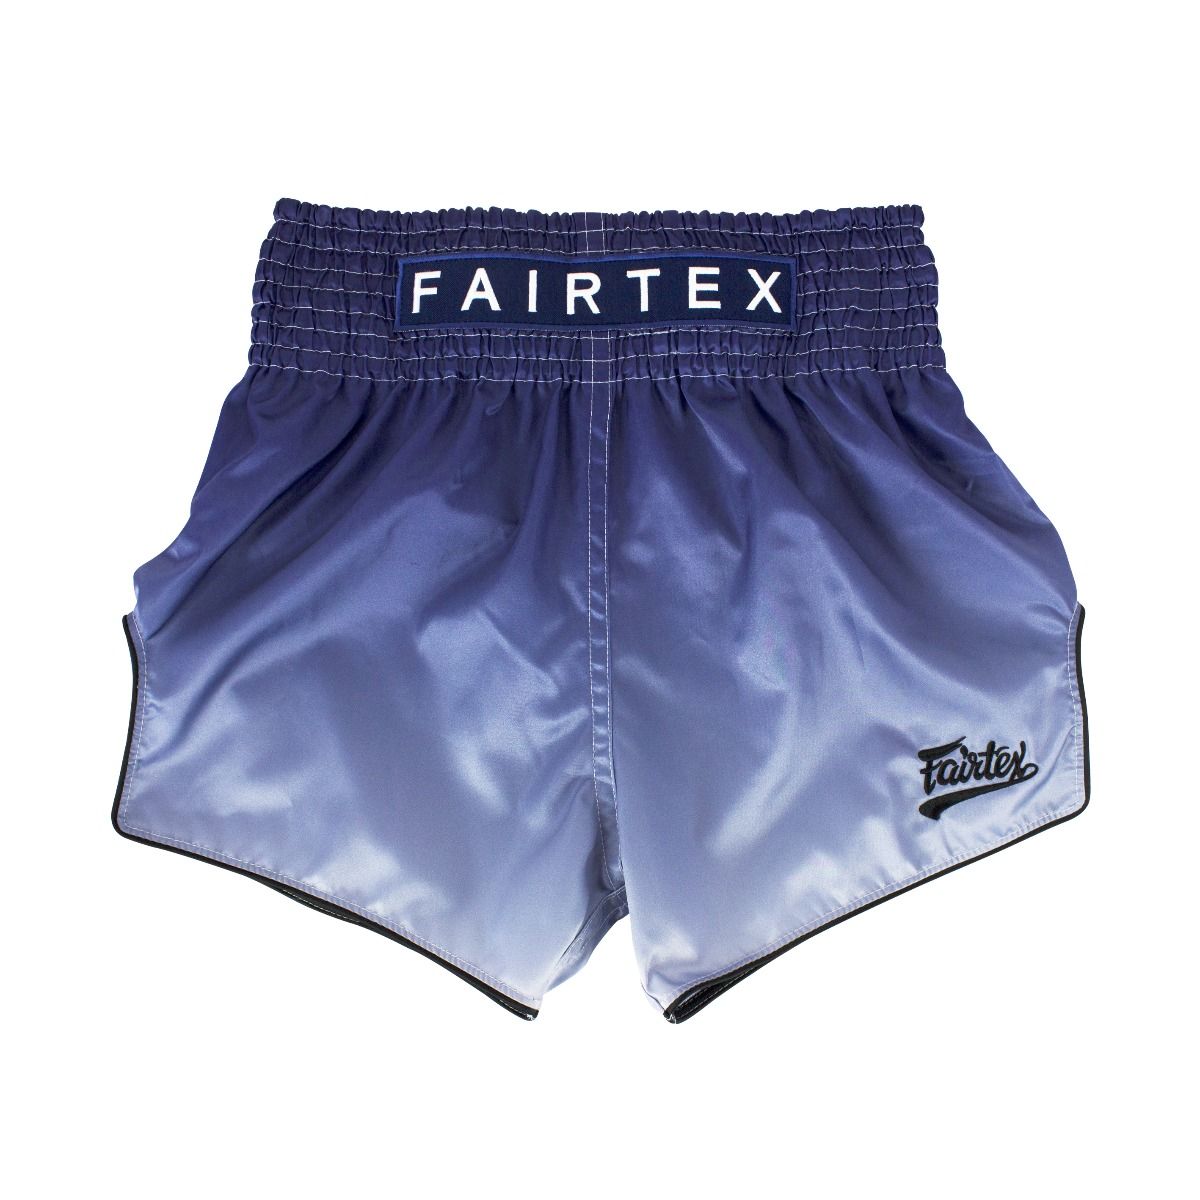 Fairtex Fade Muay Thai Shorts -BS1905 (Blue)-0